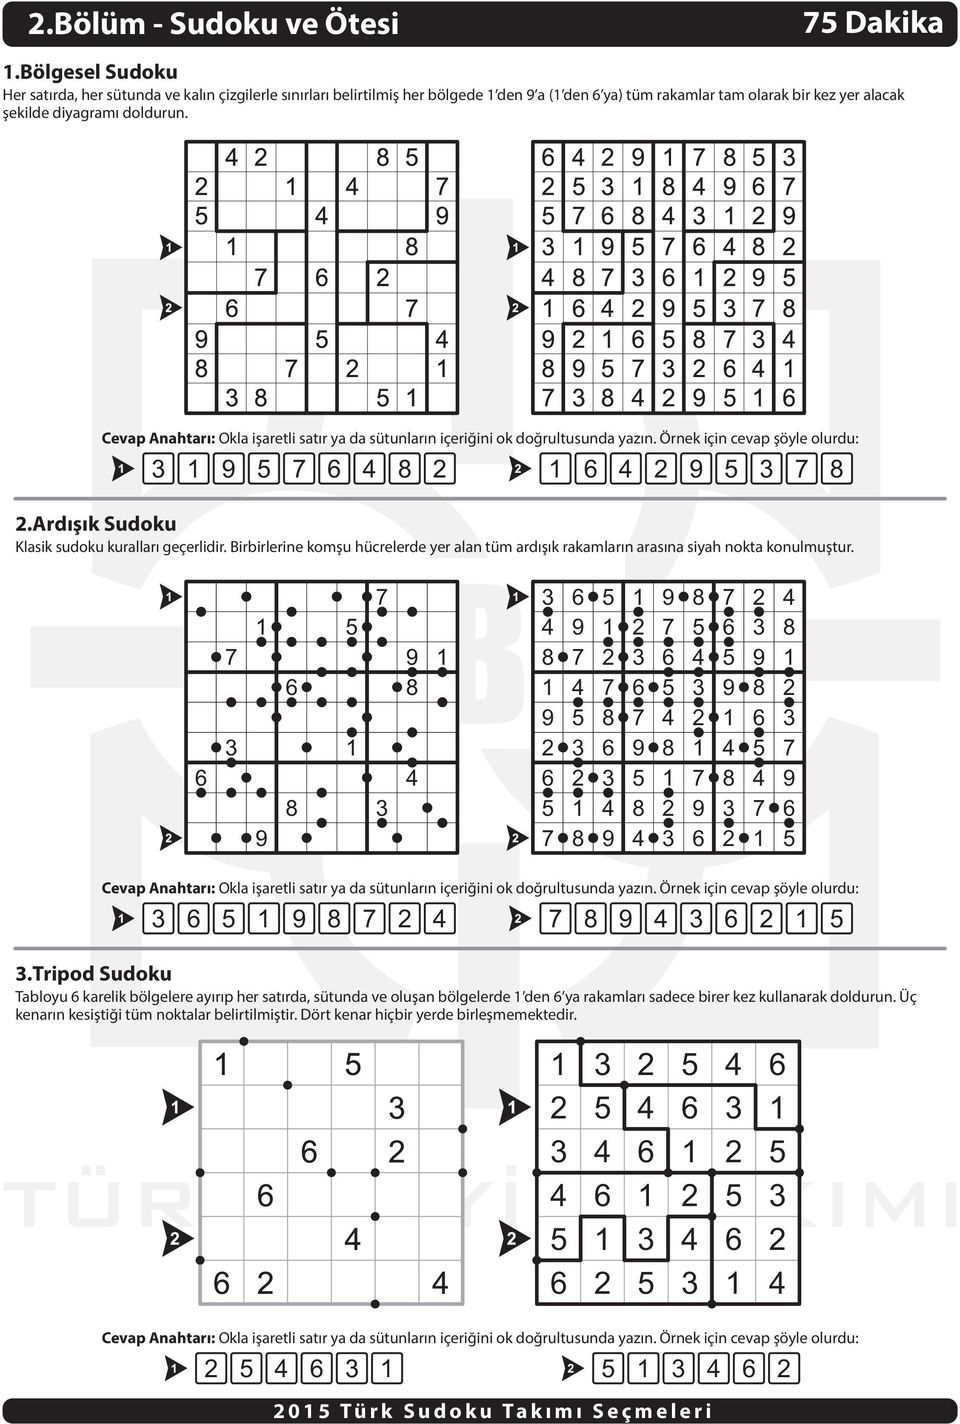 9 6 8 6 9 8.Ardýþýk Sudoku Klasik sudoku kurallarý geçerlidir. Birbirlerine komþu hücrelerde yer alan tüm ardýþýk rakamlarýn arasýna siyah nokta konulmuþtur.